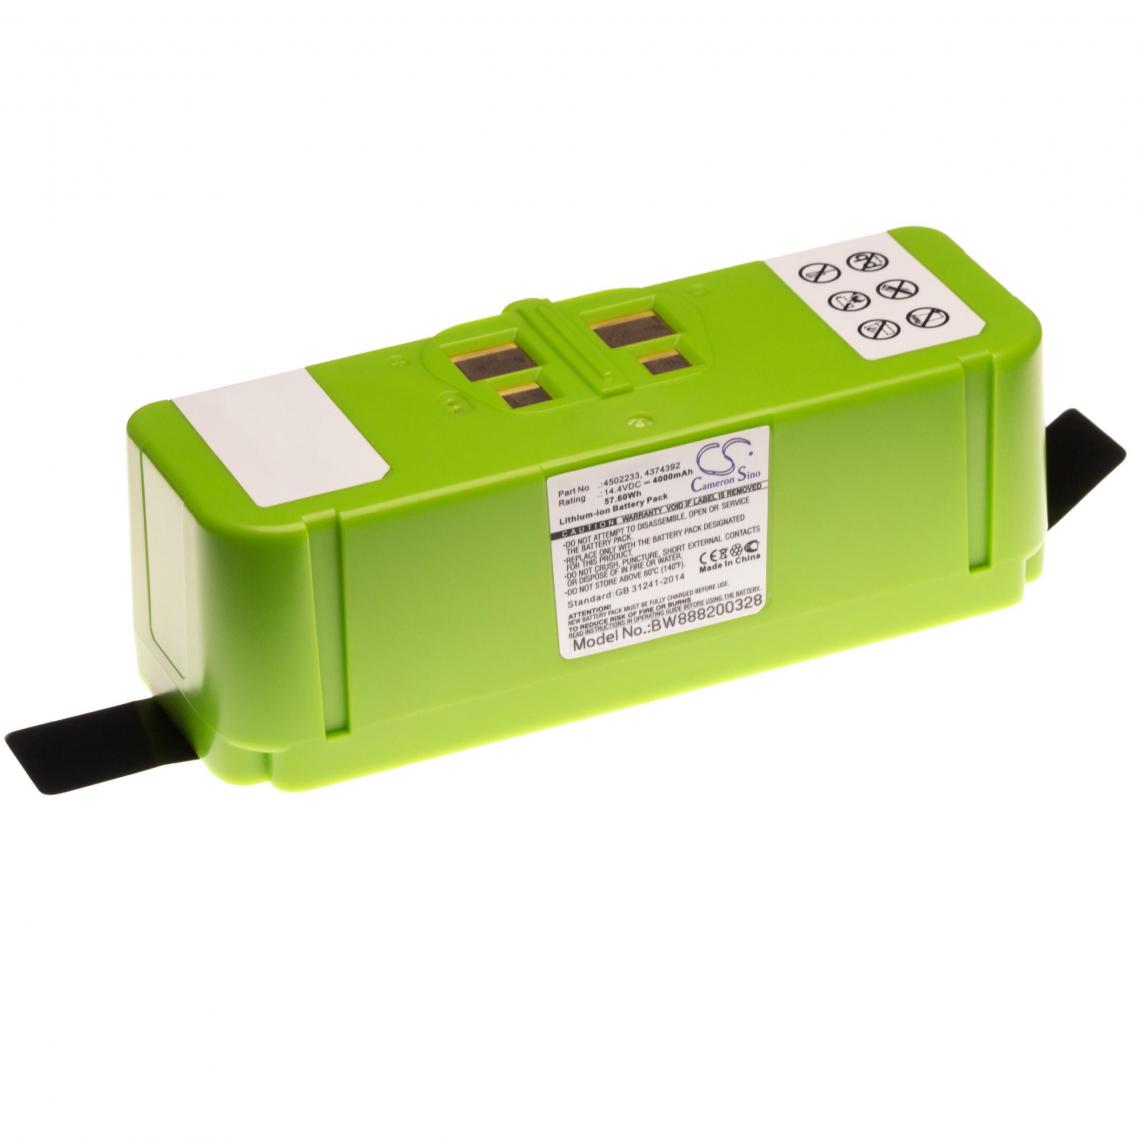 Vhbw - vhbw Batterie remplacement pour iRobot 2130LI, 4374392, 4376392, 4462425, 4502233 pour aspirateur, robot électroménager (4000mAh, 14,4V) - Accessoire entretien des sols